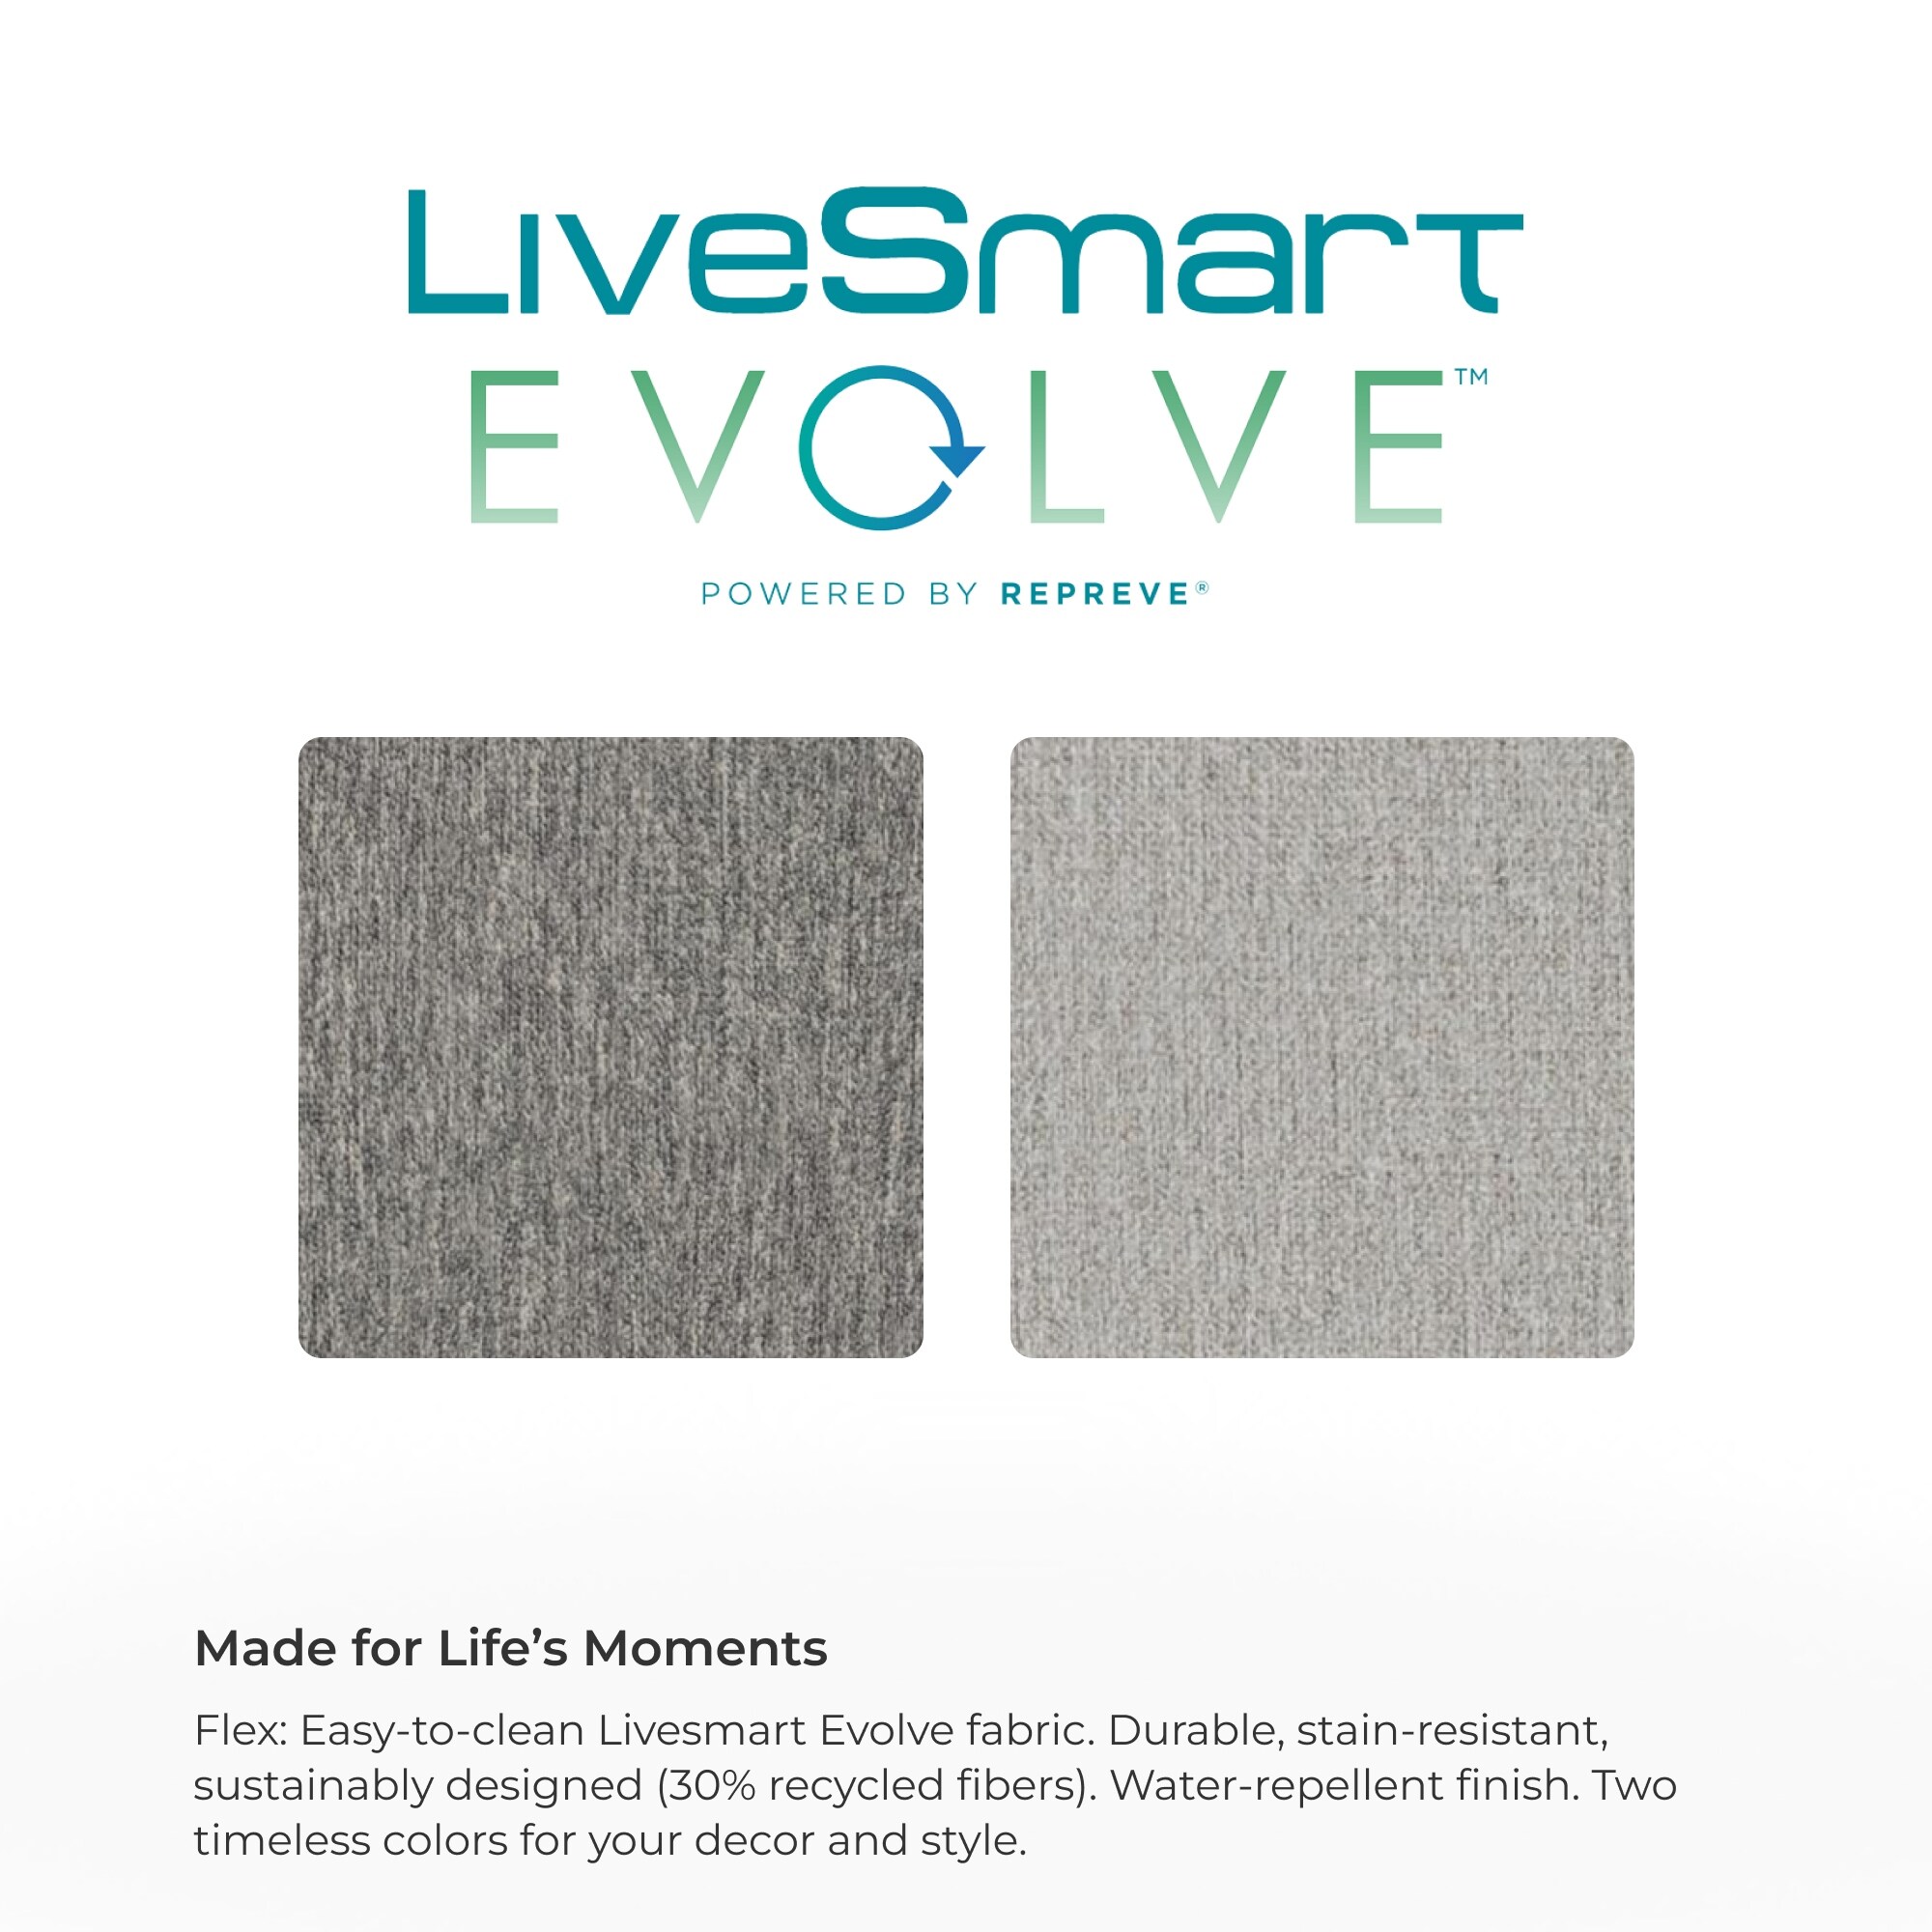 LiveSmart Evolve™